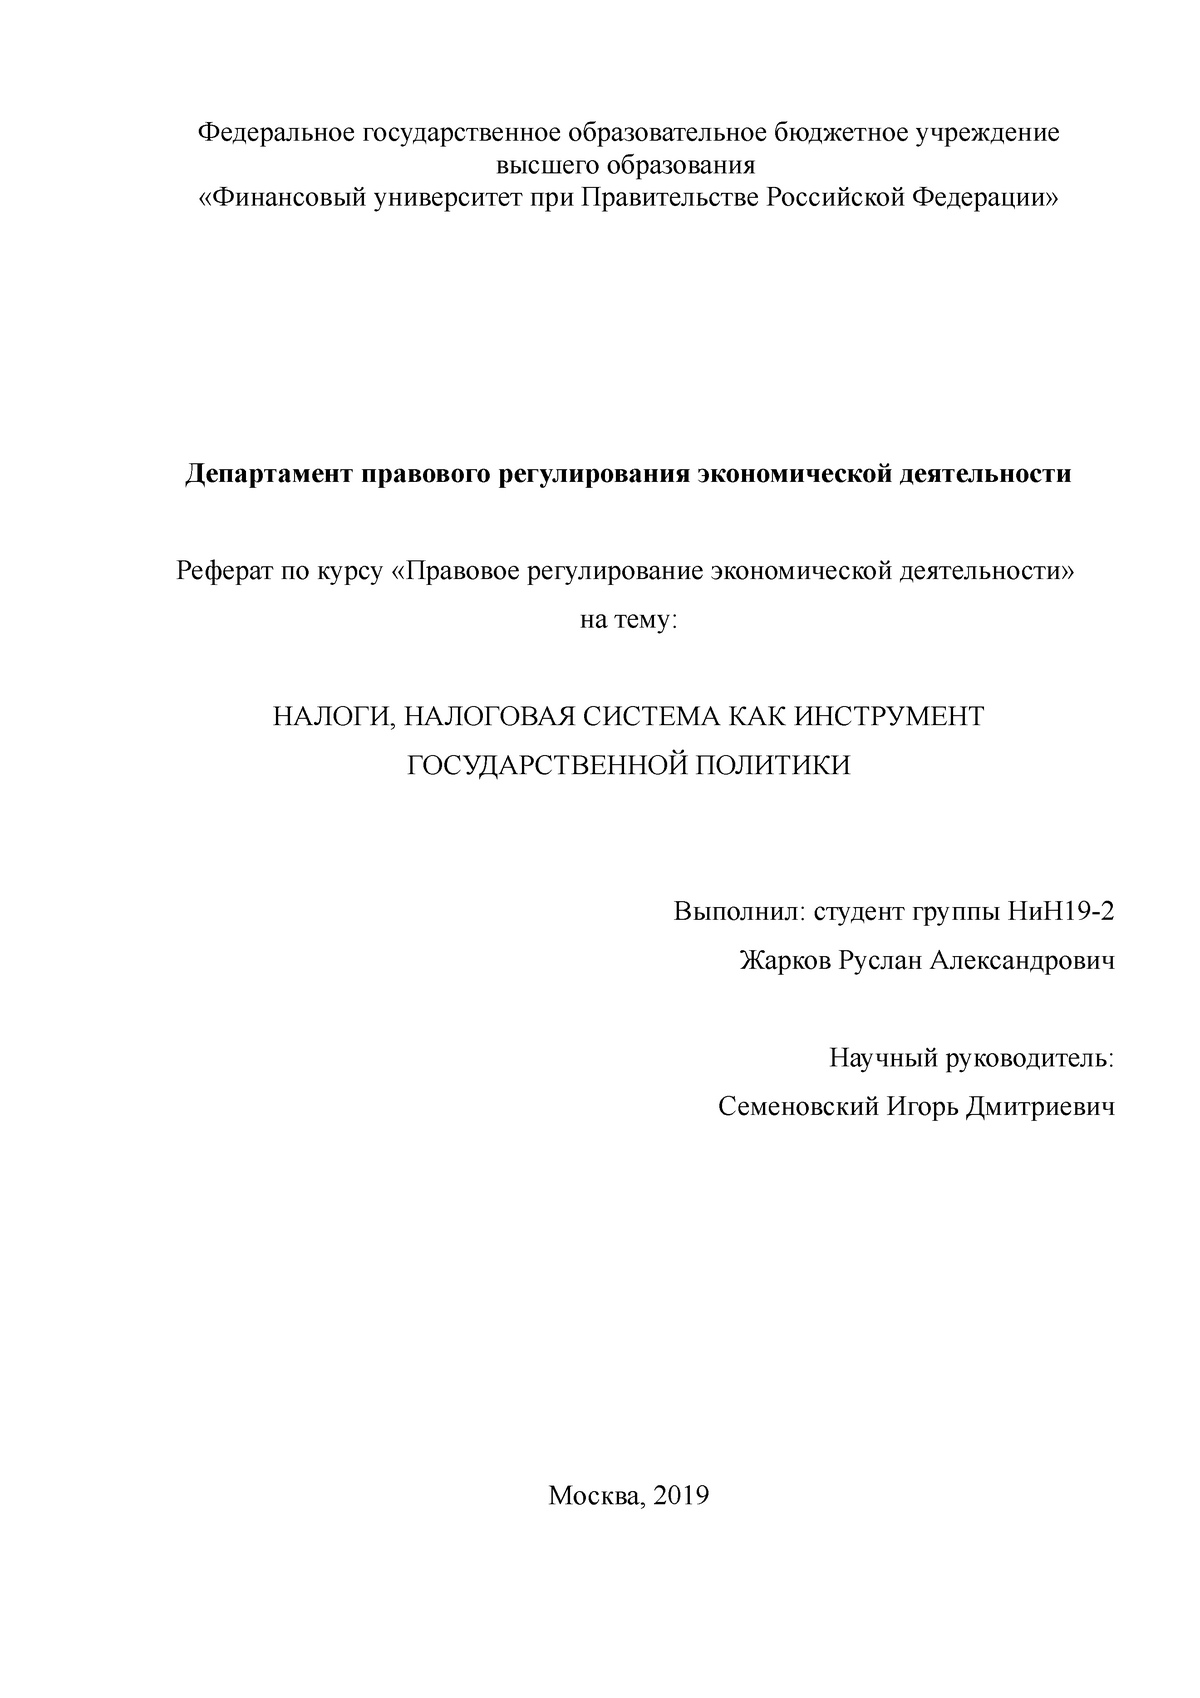 Реферат: История развития и становления налоговой системы в России